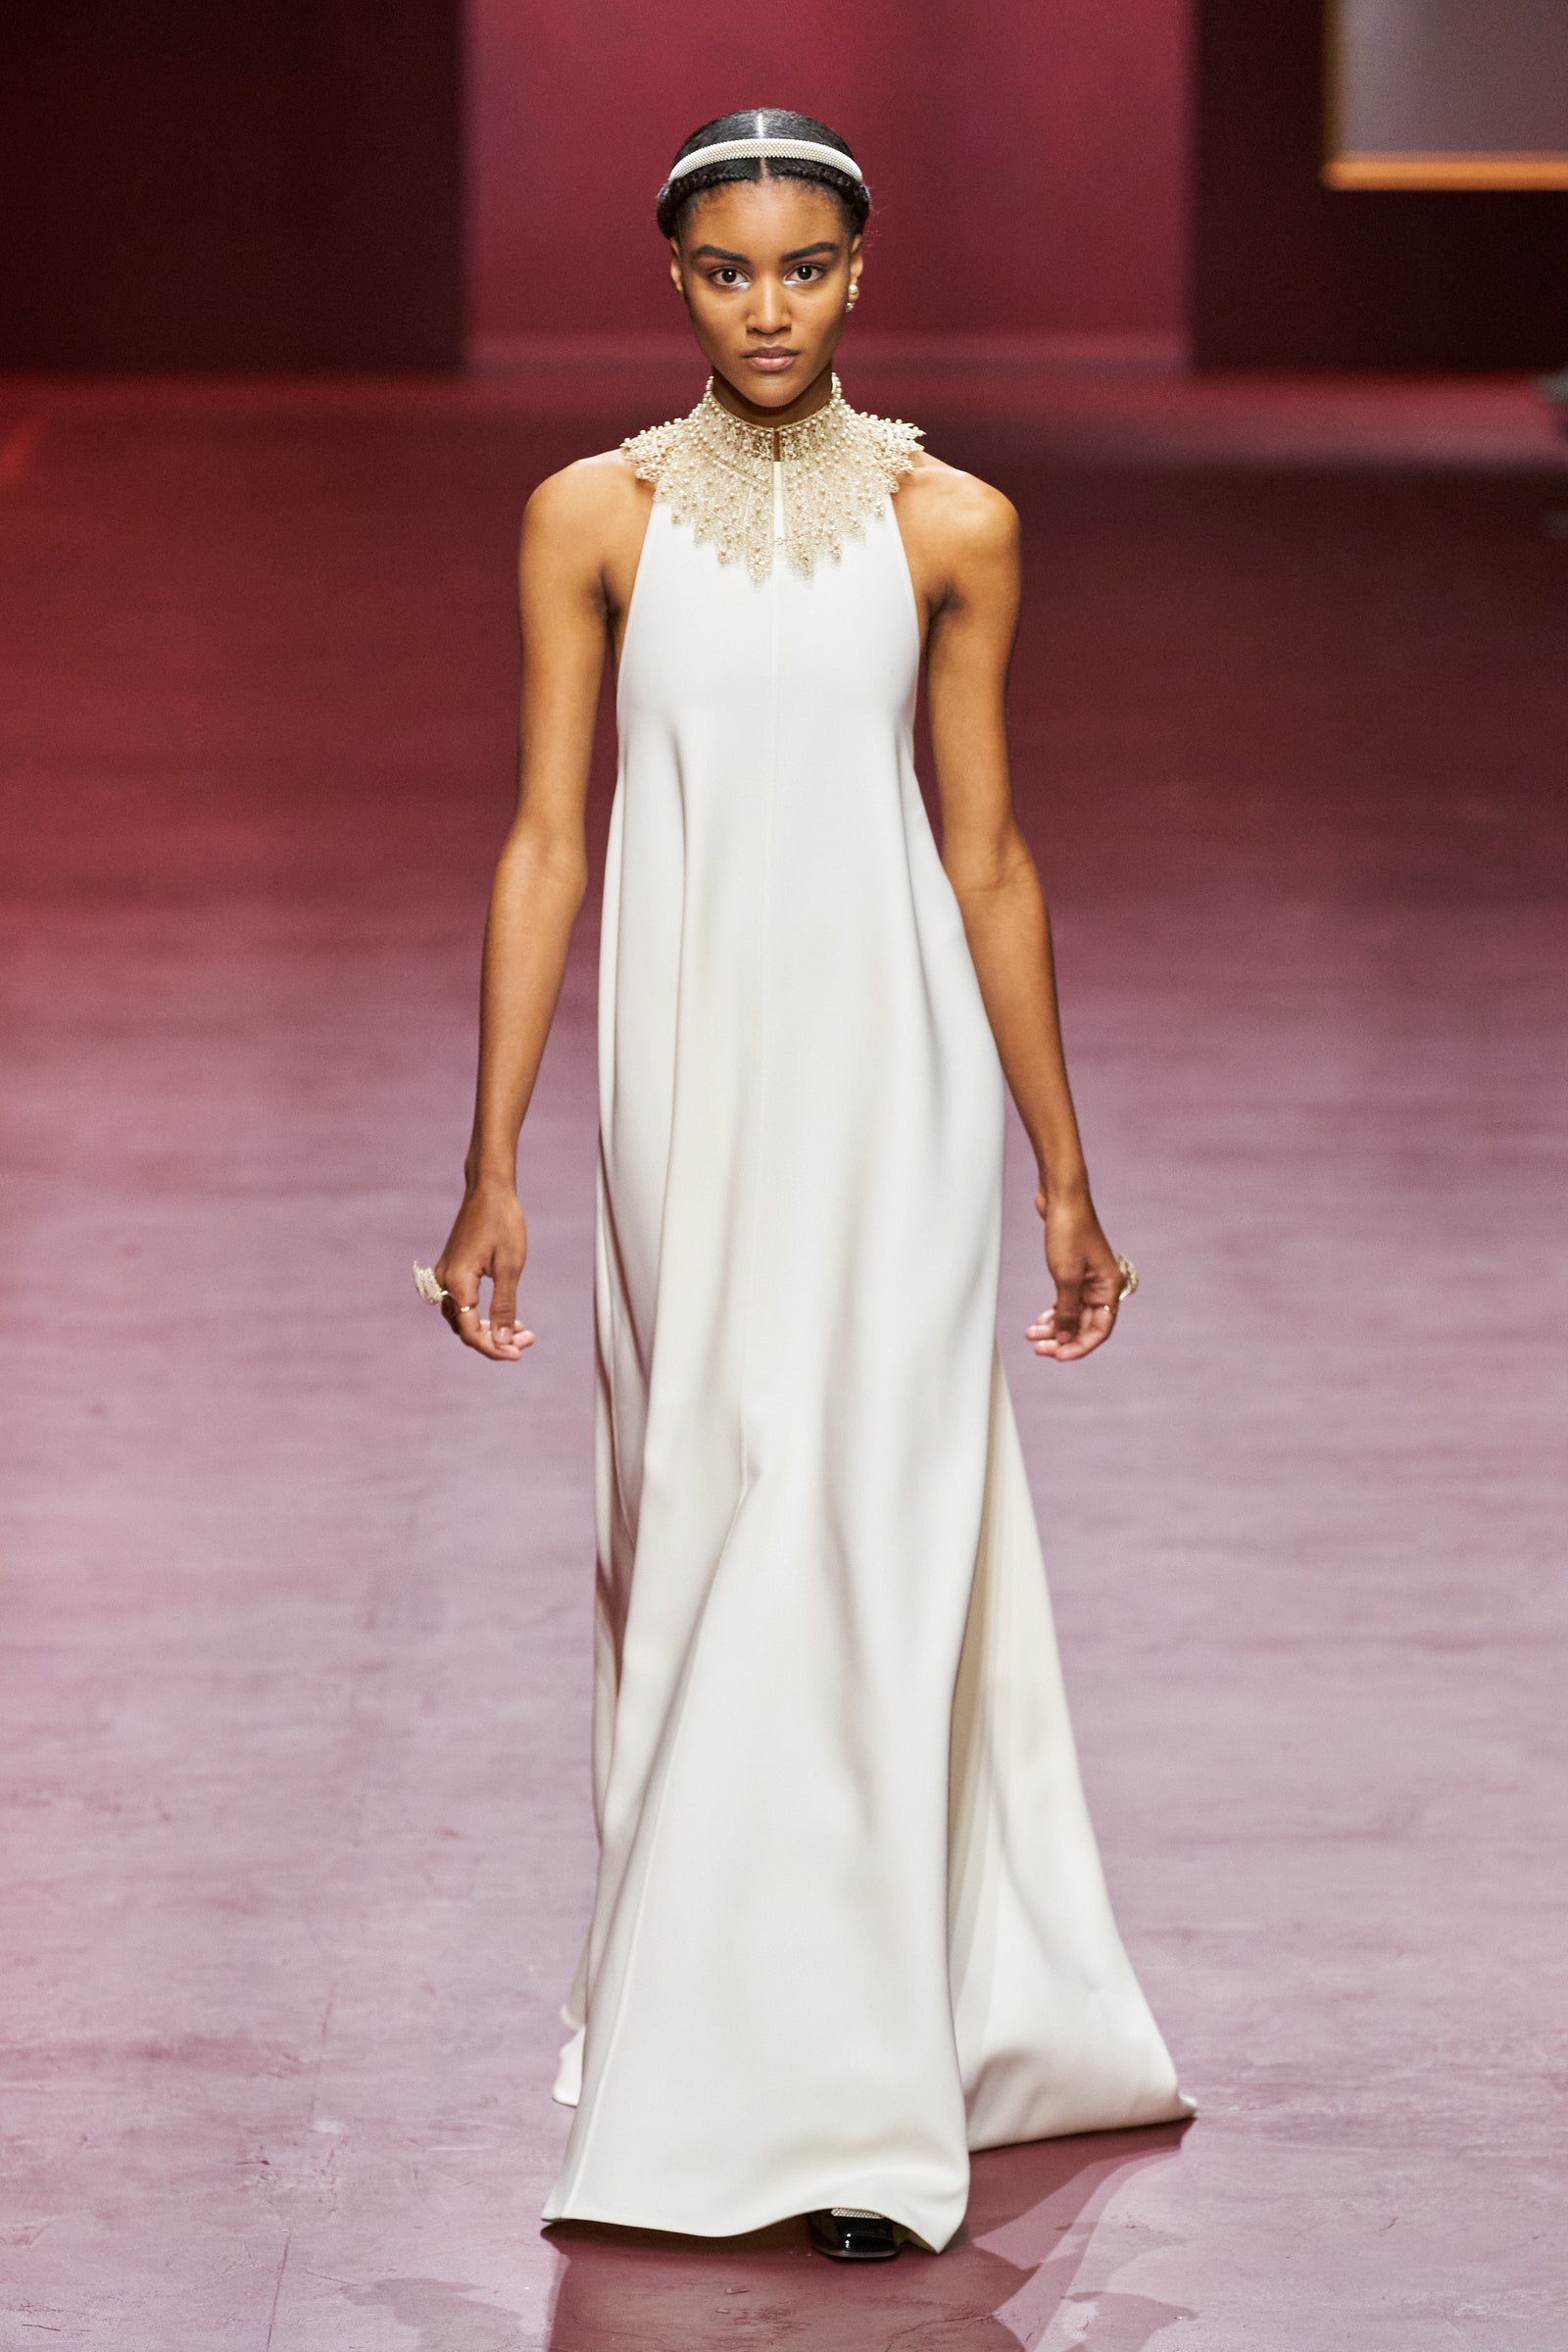 Váy - Đầm lanh: Cách chọn và những mẫu đẹp từ Cardina